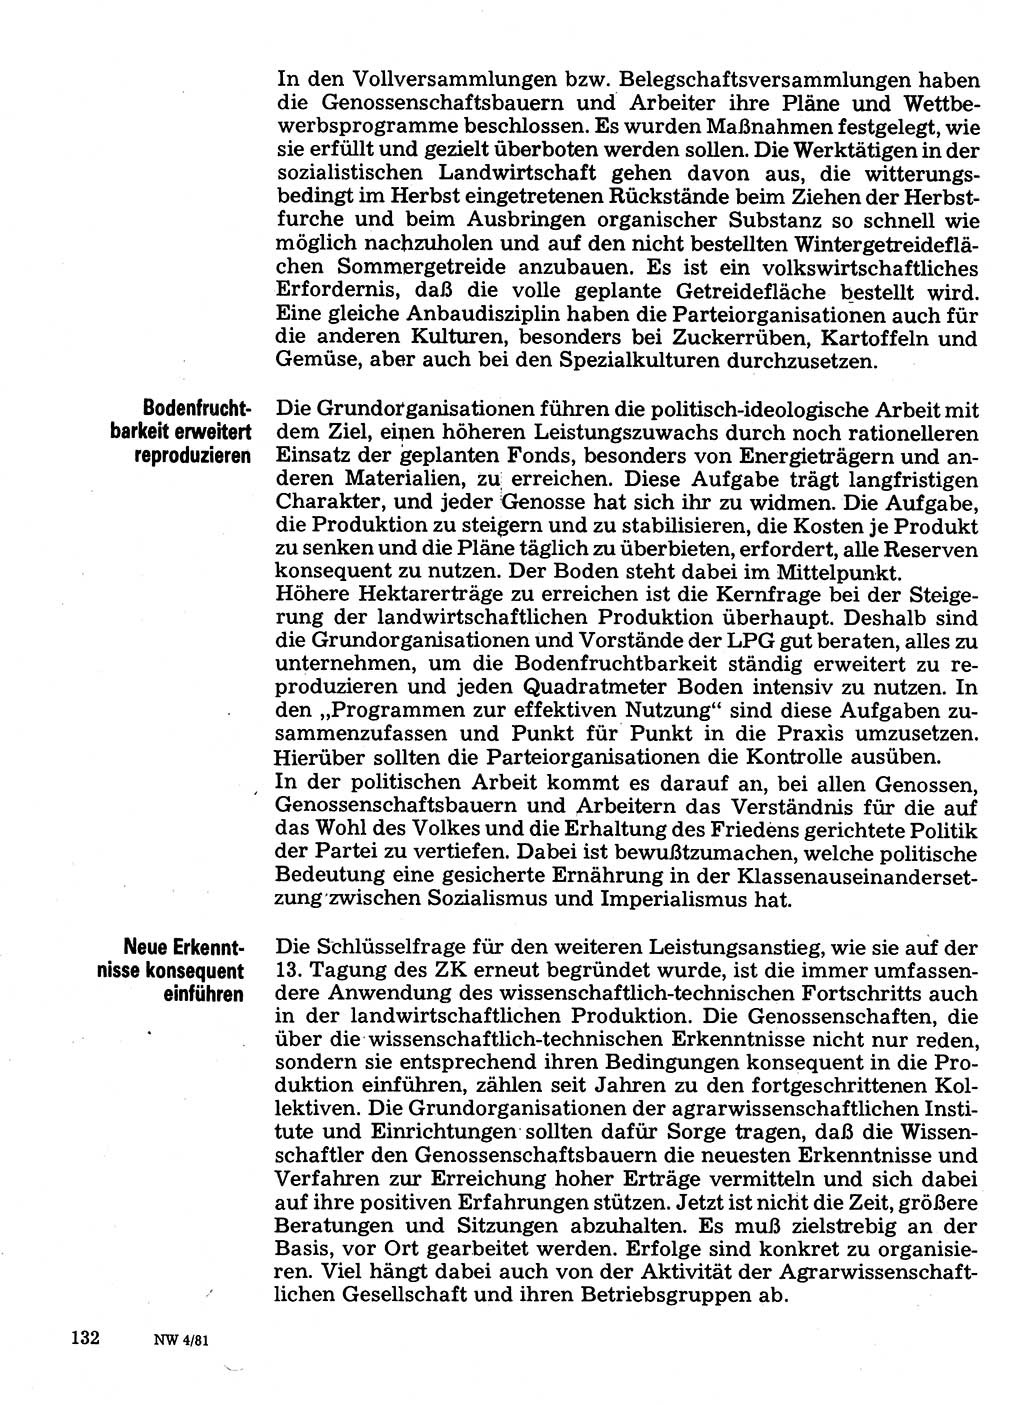 Neuer Weg (NW), Organ des Zentralkomitees (ZK) der SED (Sozialistische Einheitspartei Deutschlands) für Fragen des Parteilebens, 36. Jahrgang [Deutsche Demokratische Republik (DDR)] 1981, Seite 132 (NW ZK SED DDR 1981, S. 132)